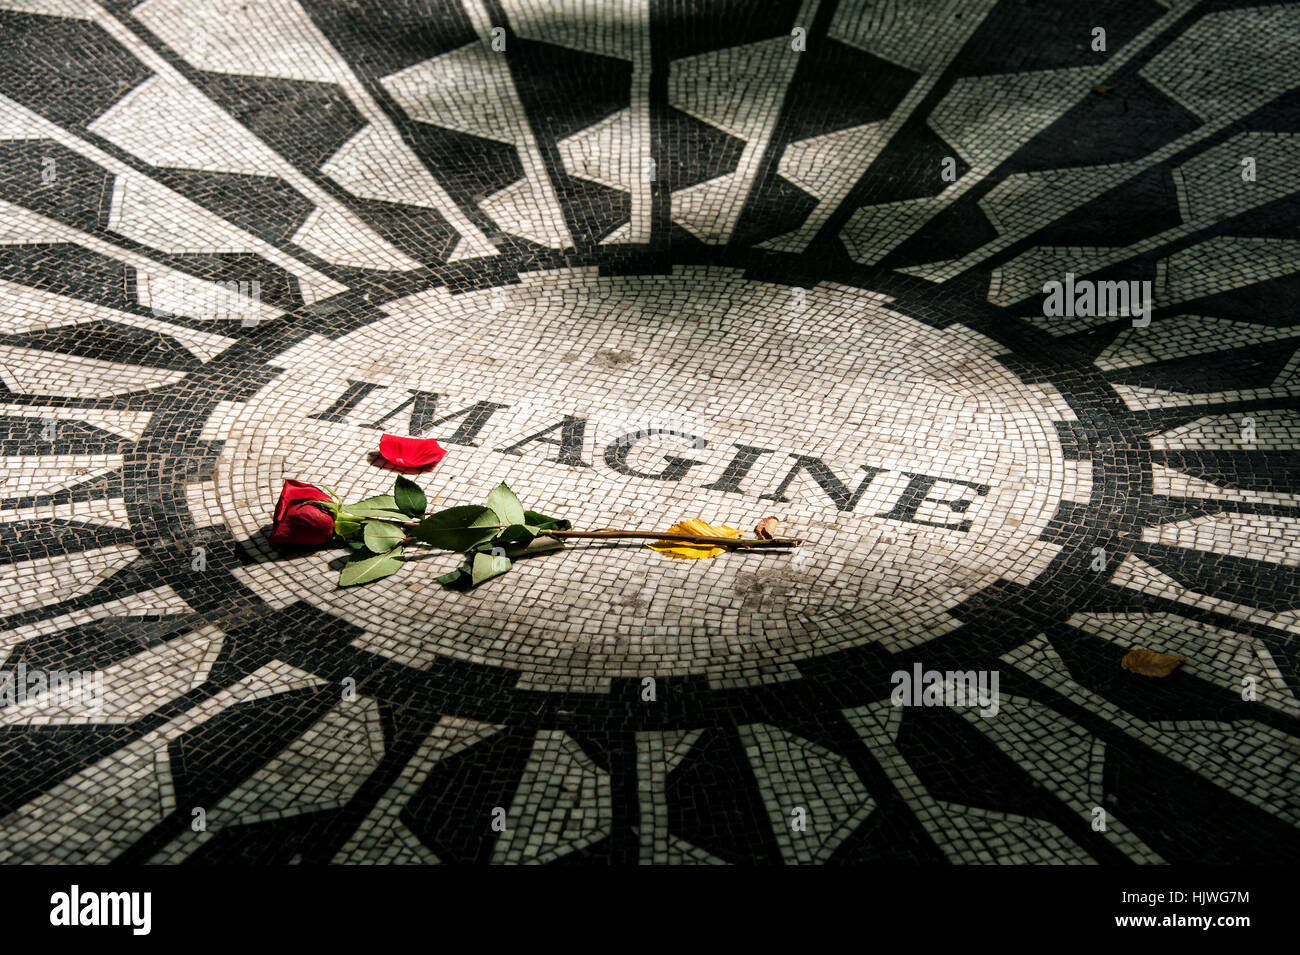 Strawberry Fields Memorial, Imagine mosaico con rosa roja en memoria de John Lennon, Central Park, Manhattan, Ciudad de Nueva York, EE.UU. Foto de stock